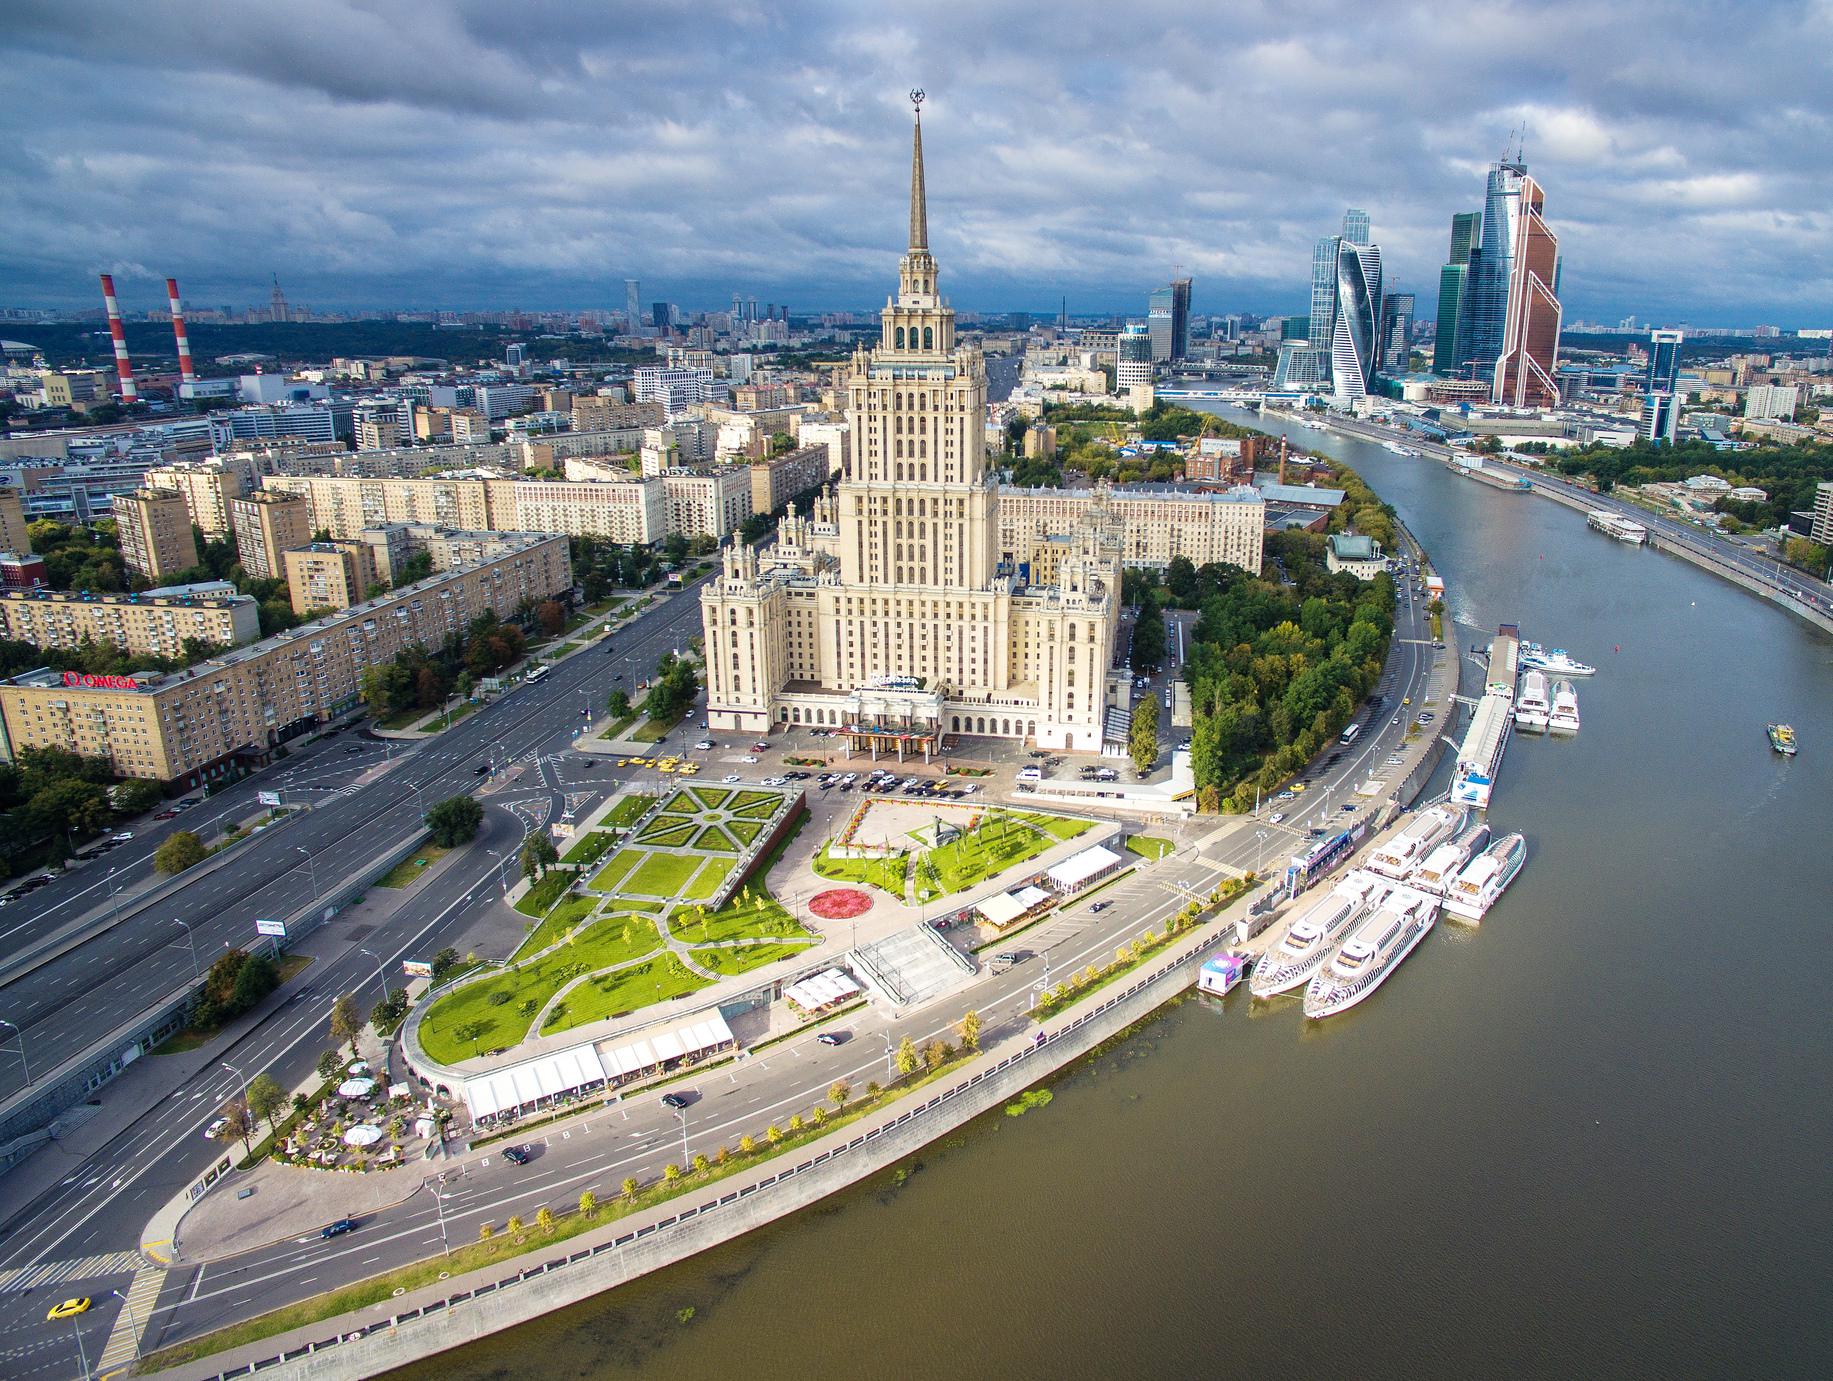 Сегодня перспективу Кутузовского успешно дополняют современные постройки. Неотъемлемой частью панорамы стали небоскребы &laquo;Москва-Сити&raquo;